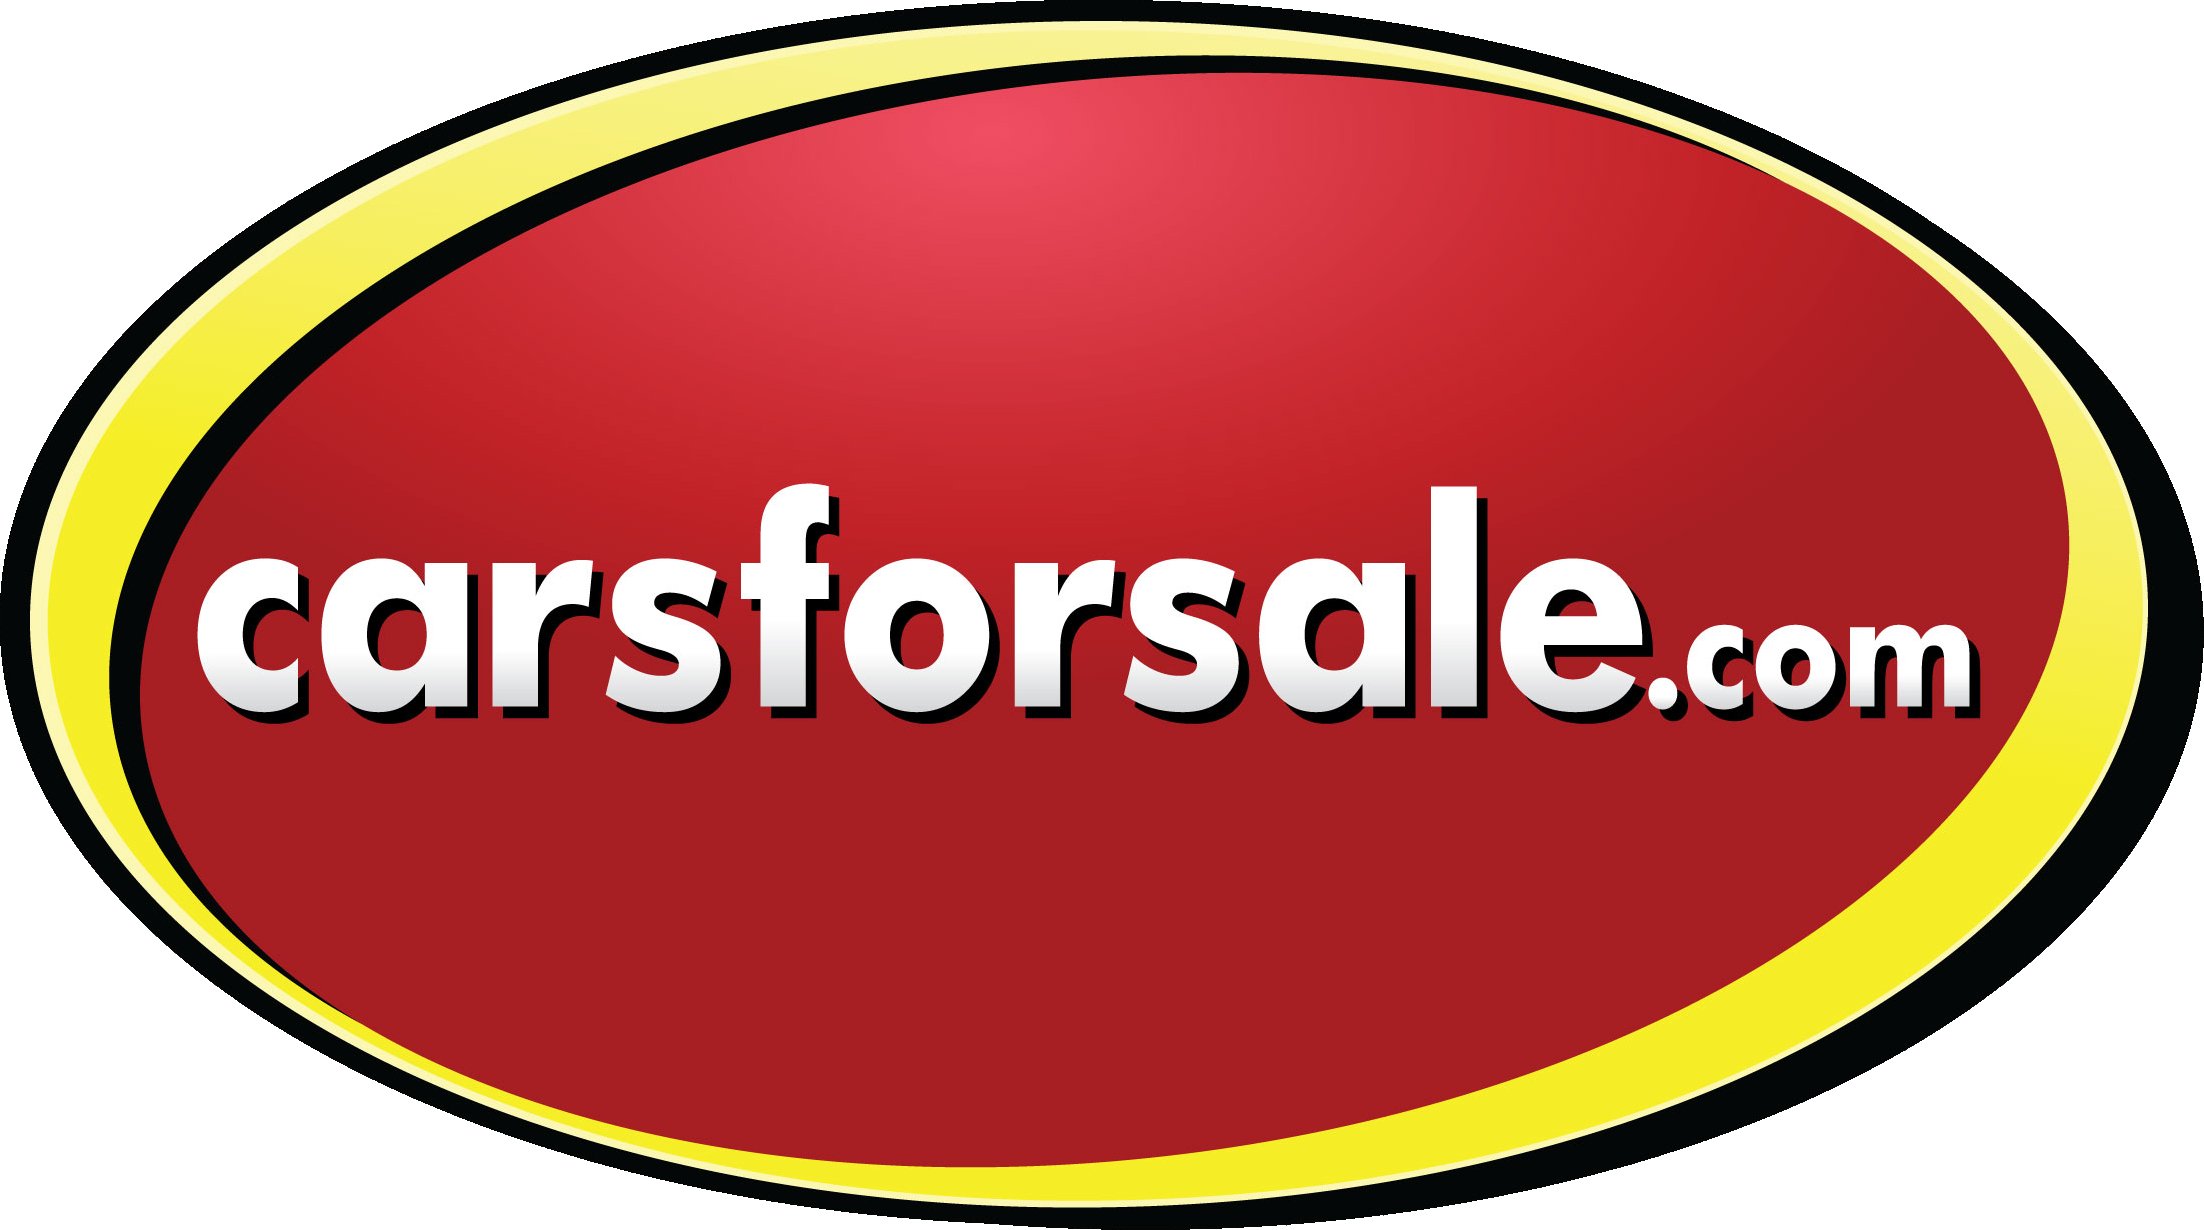 carsforsale-logo2.jpg